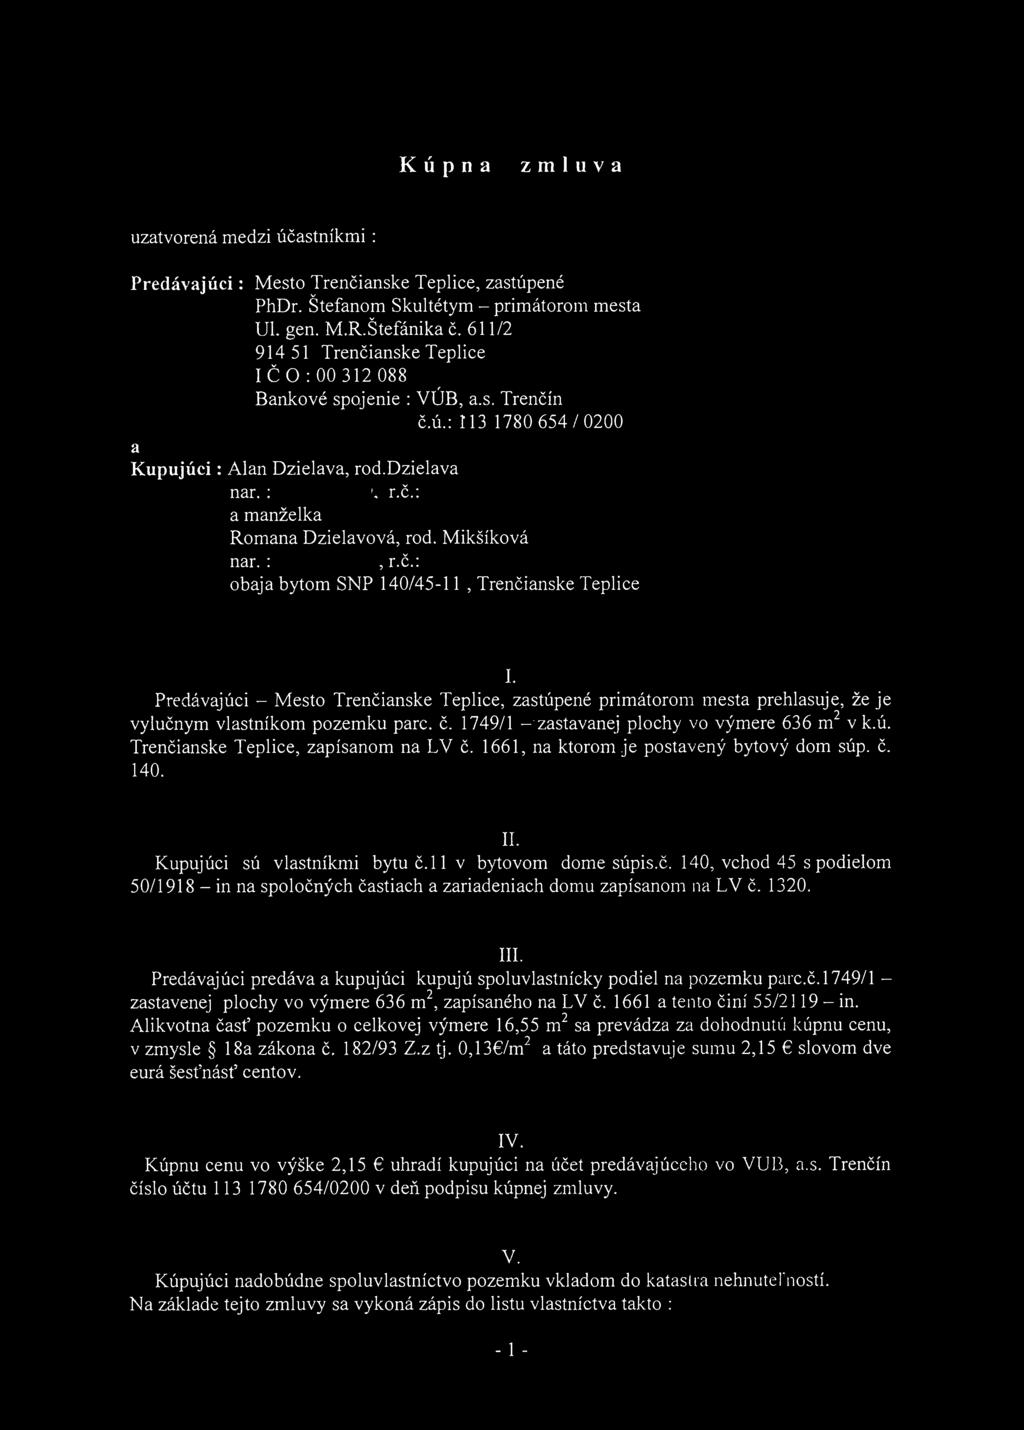 Kúpna zmluva uzatvorená medzi účastníkmi : Predávajúci: Mesto Trenčianske Teplice, zastúpené PhDr. Štefanom Skultétym - primátorom mesta UL gen. M.R.